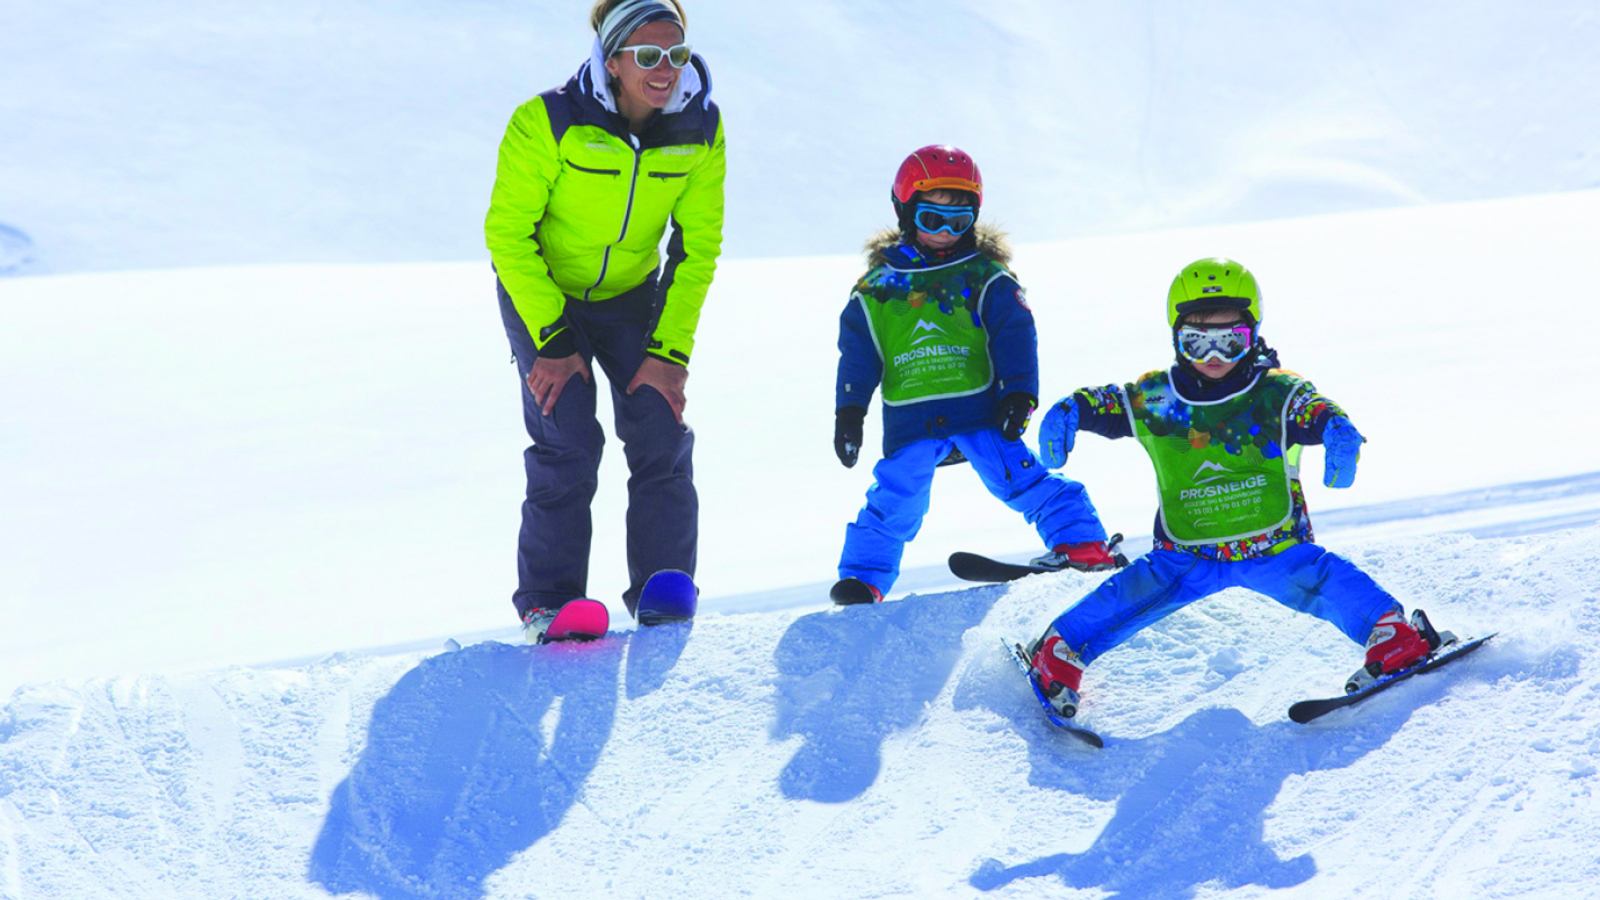 Prosneige - Ski school - Meribel - Children group lesson or tuition